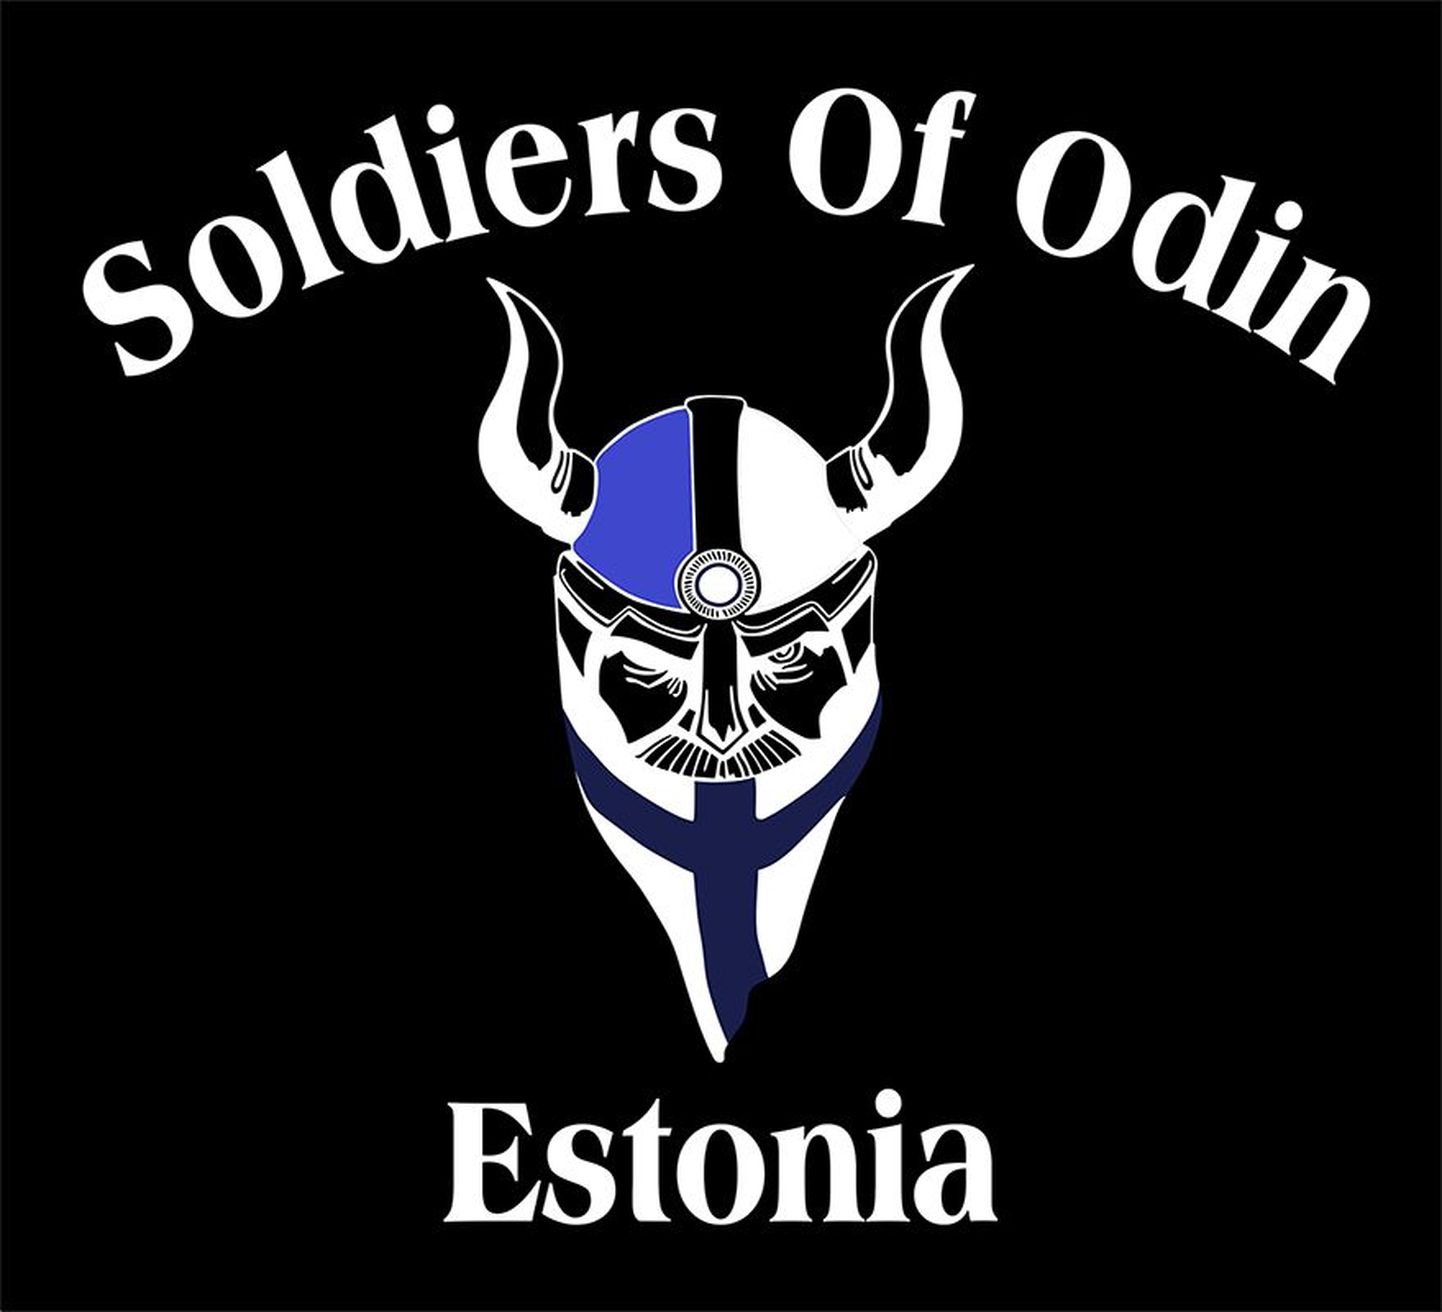 Odini sõdalaste embleem.